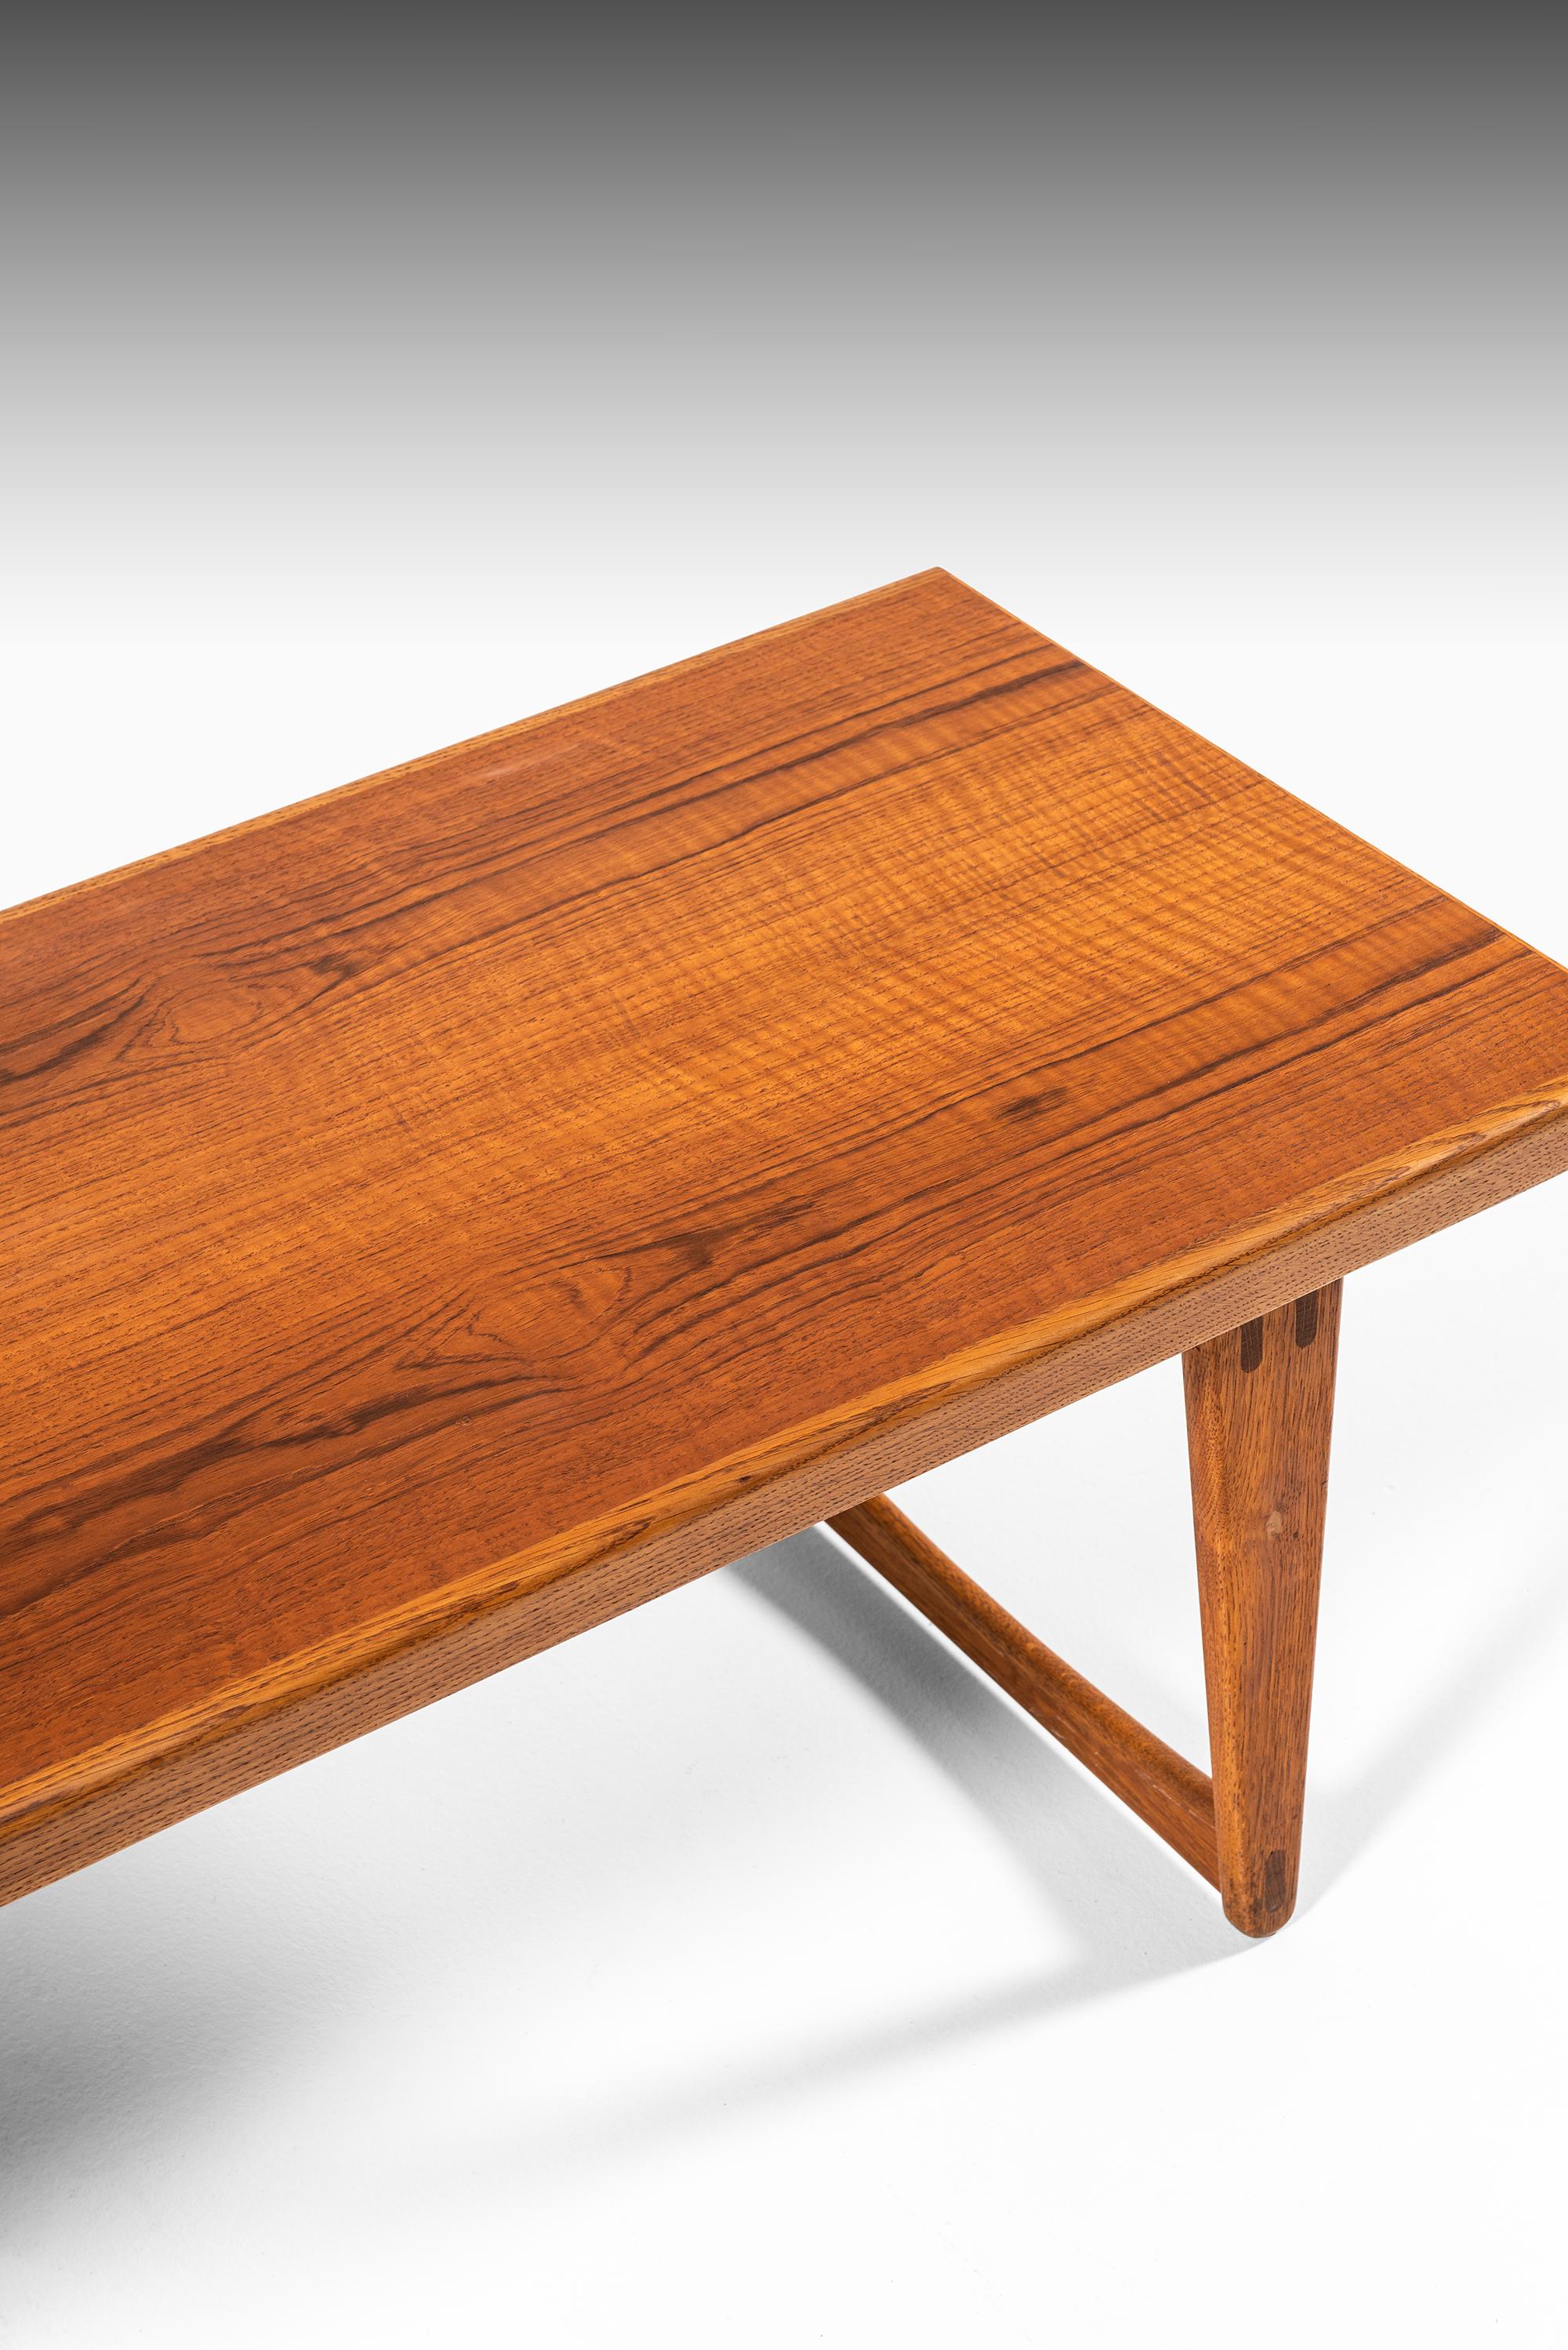 Rare table basse / table d'appoint / banc conçu par Yngve Ekström. Produit par Westbergs à Tranås, Suède.